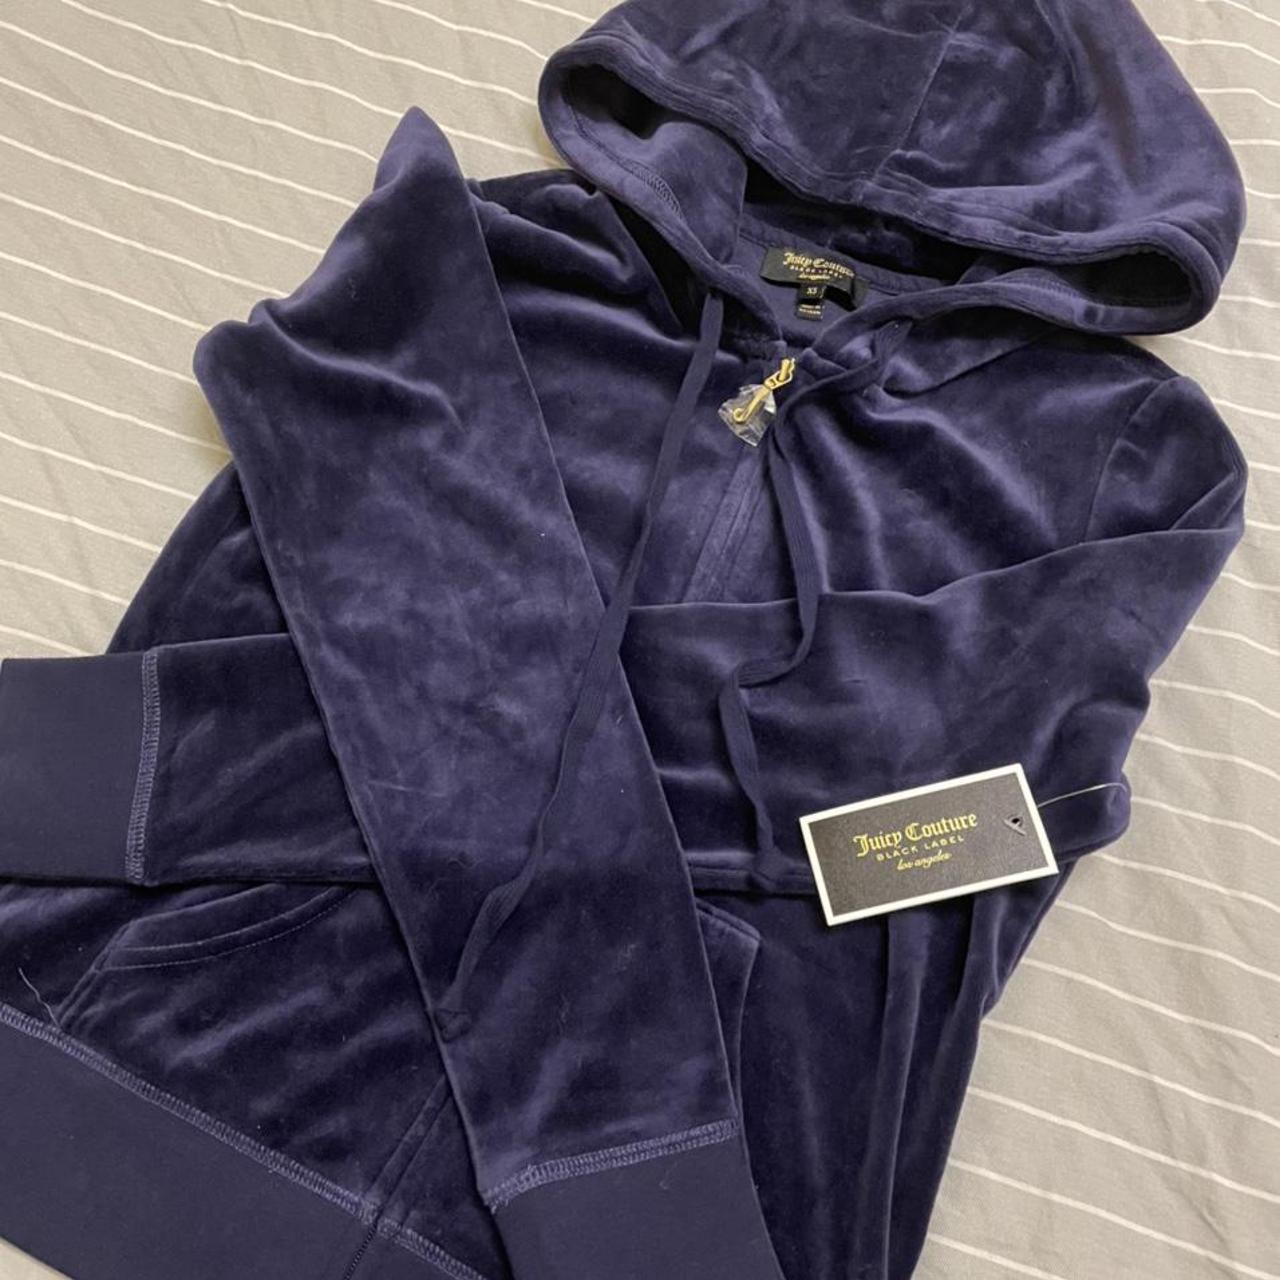 Juicy couture velour hoodie in “Royal Navy blue “... - Depop